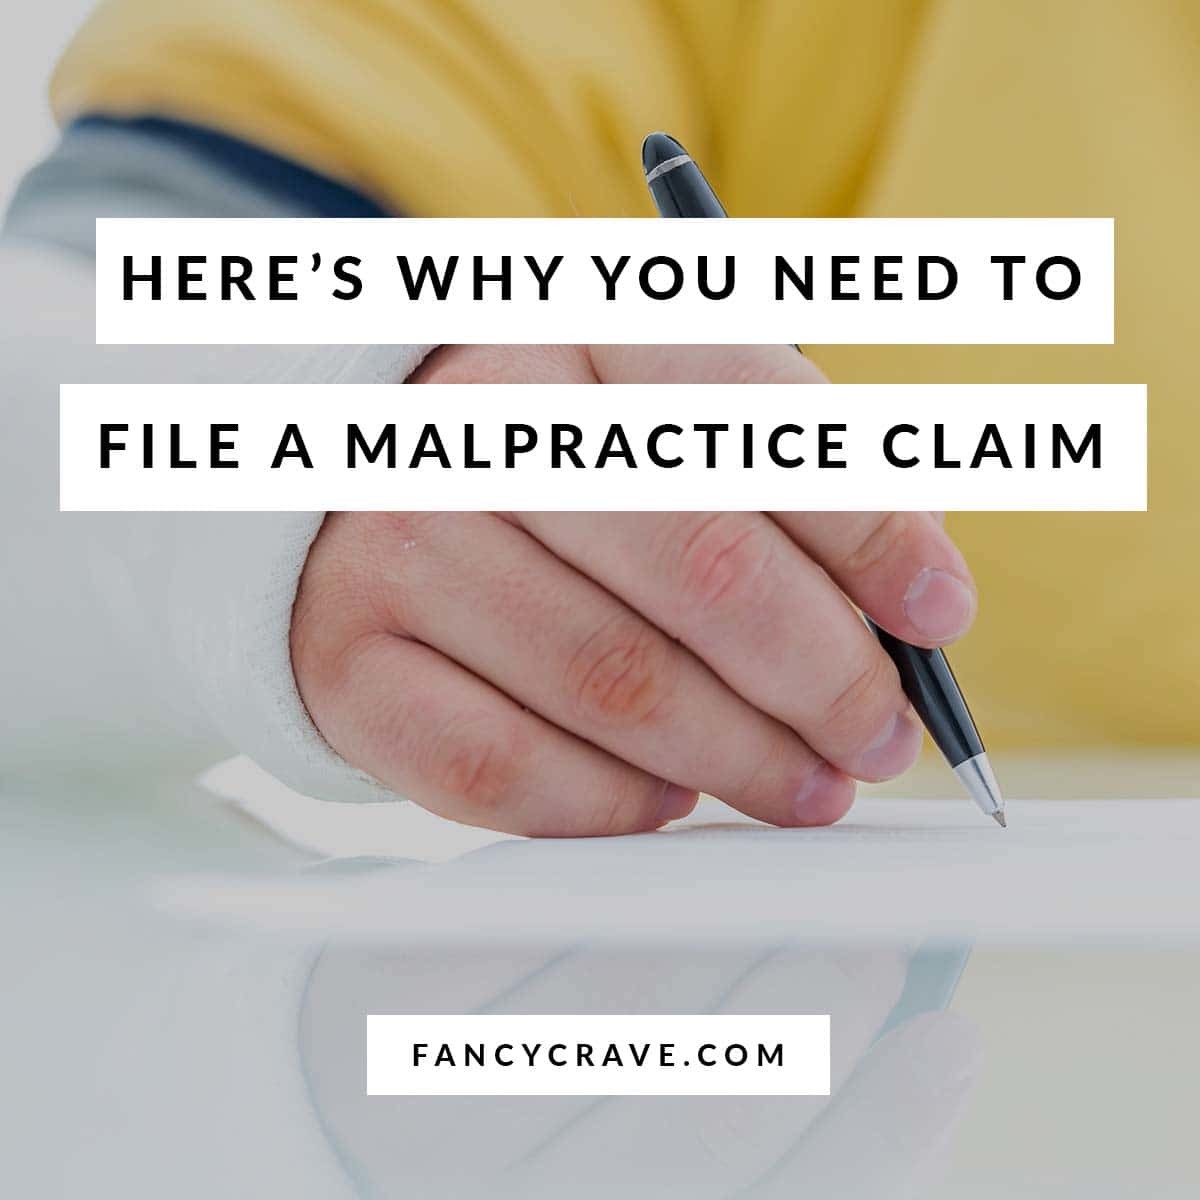 File a Malpractice Claim